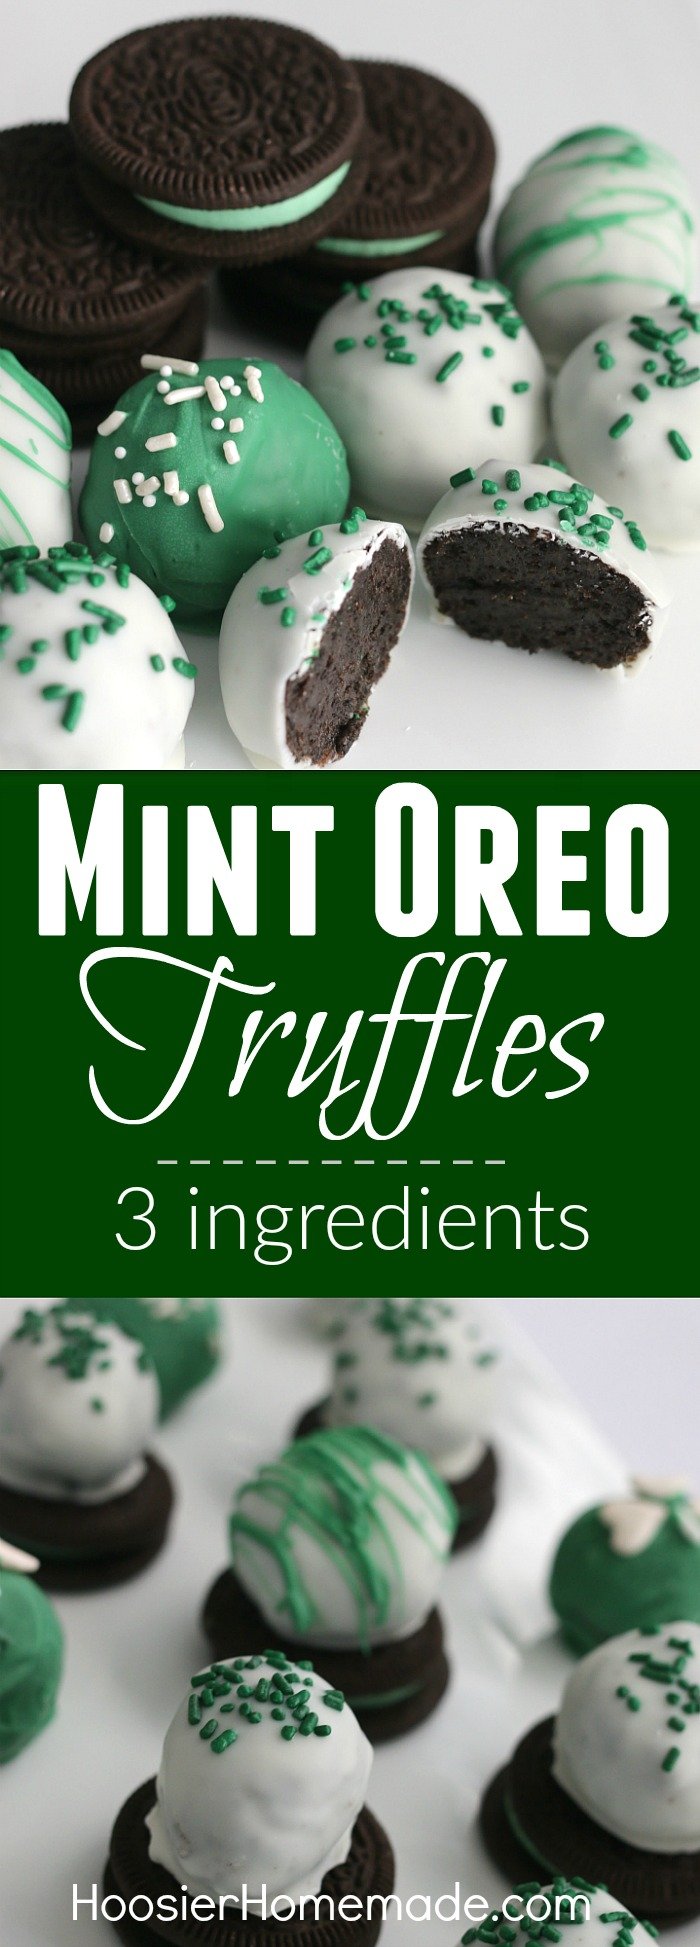 Mint Oreo Truffles: St. Patrick's Day Treats - Hoosier Homemade - Mint Oreo Truffles: St. Patrick's Day Treats - Hoosier Homemade -   11 diy Food oreo ideas